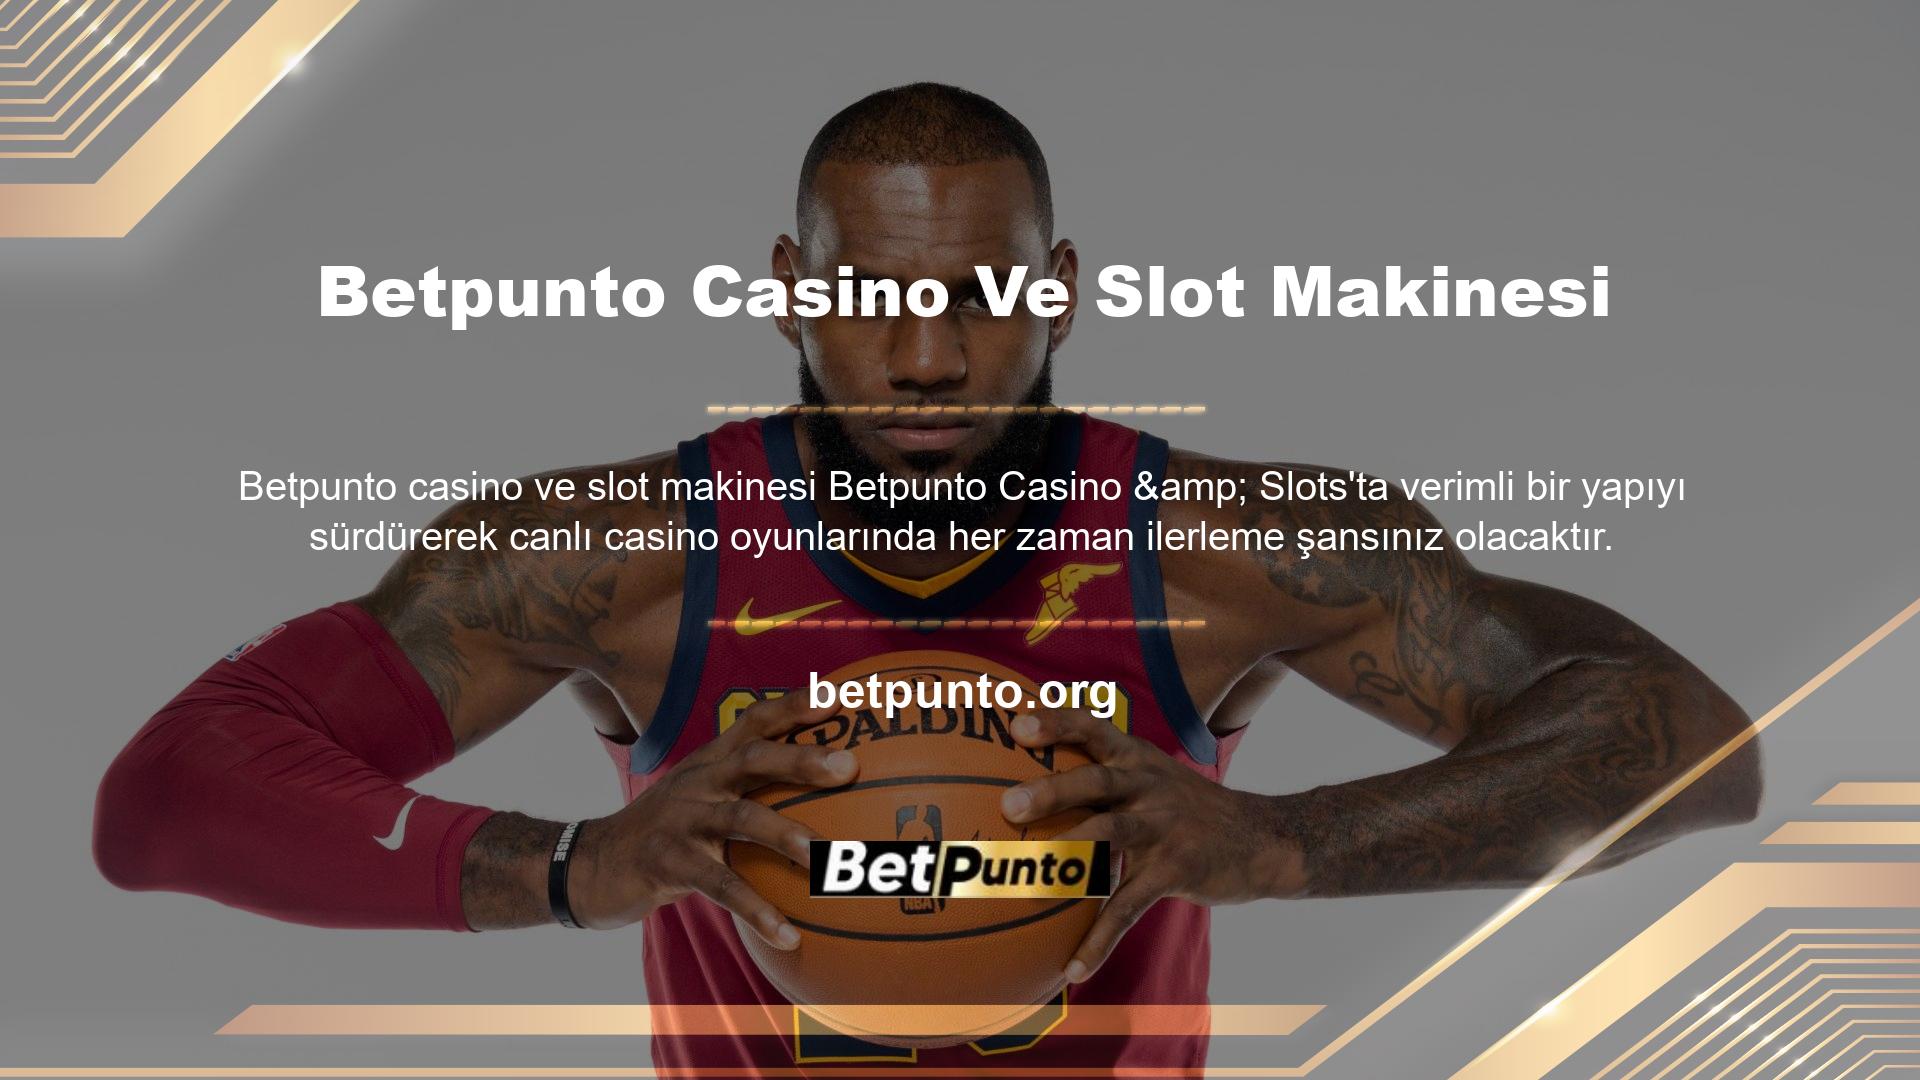 Amacınız başarılı bir canlı bahis yapısını teşvik etmek ve bunu harika bonuslarla geliştirmekse, Betpunto rulet sitesi her zaman en iyi oyunları sunar